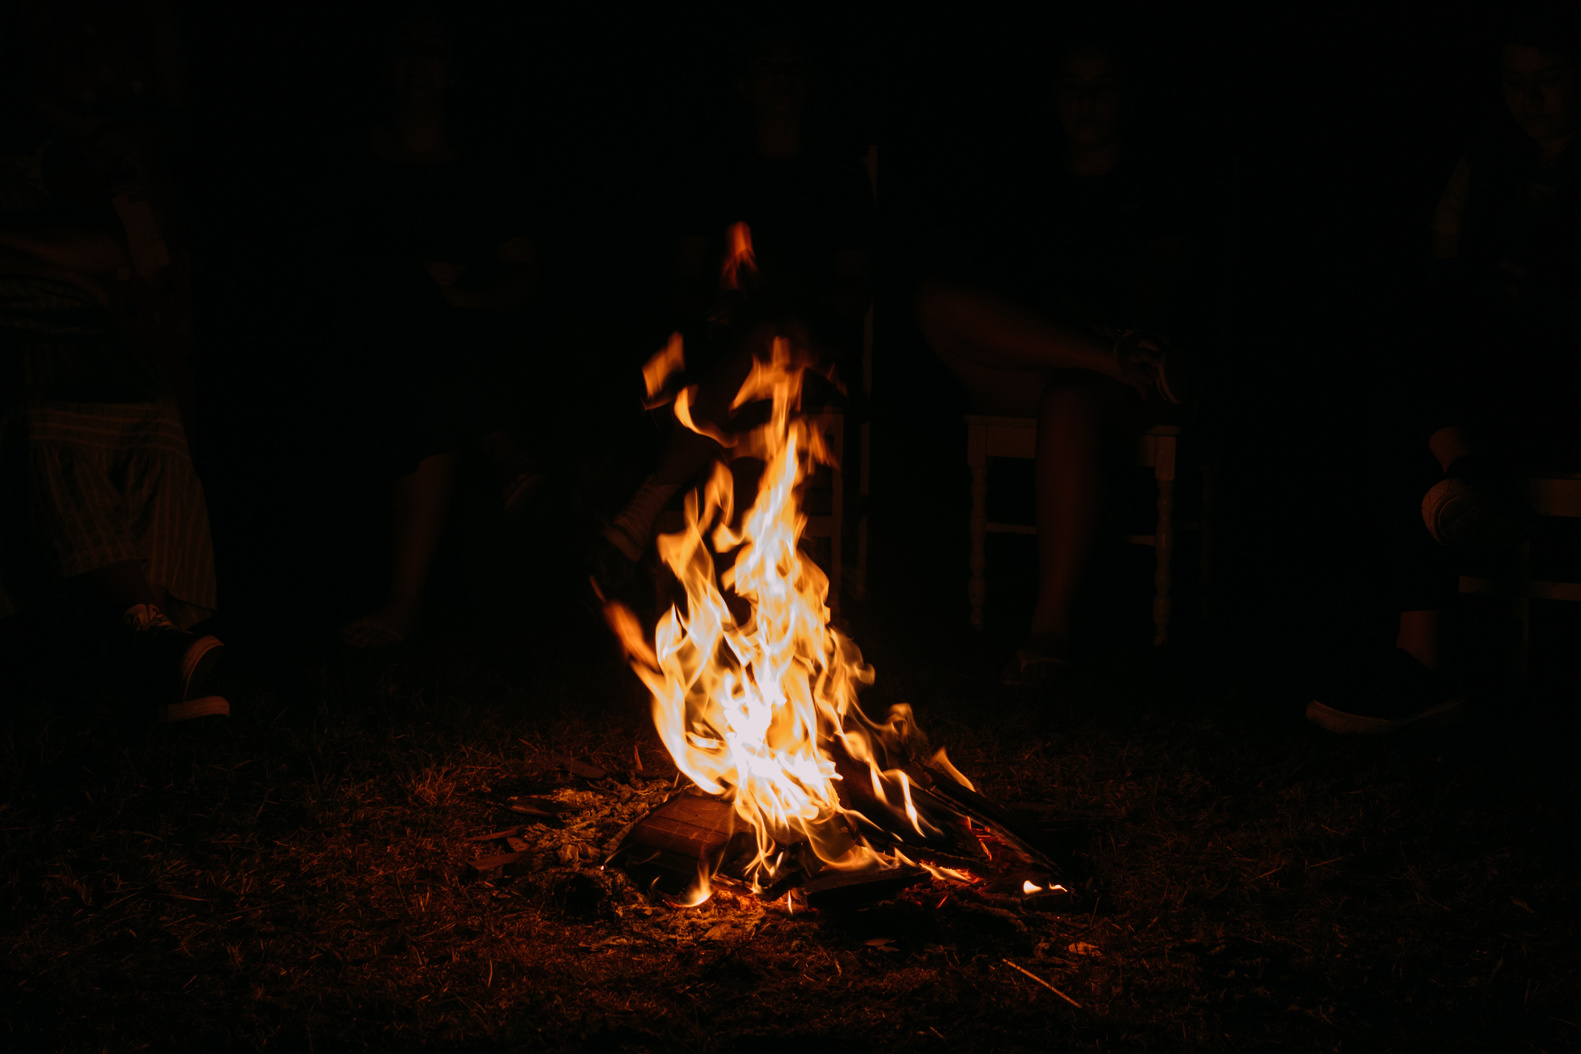 A Bonfire While Dark